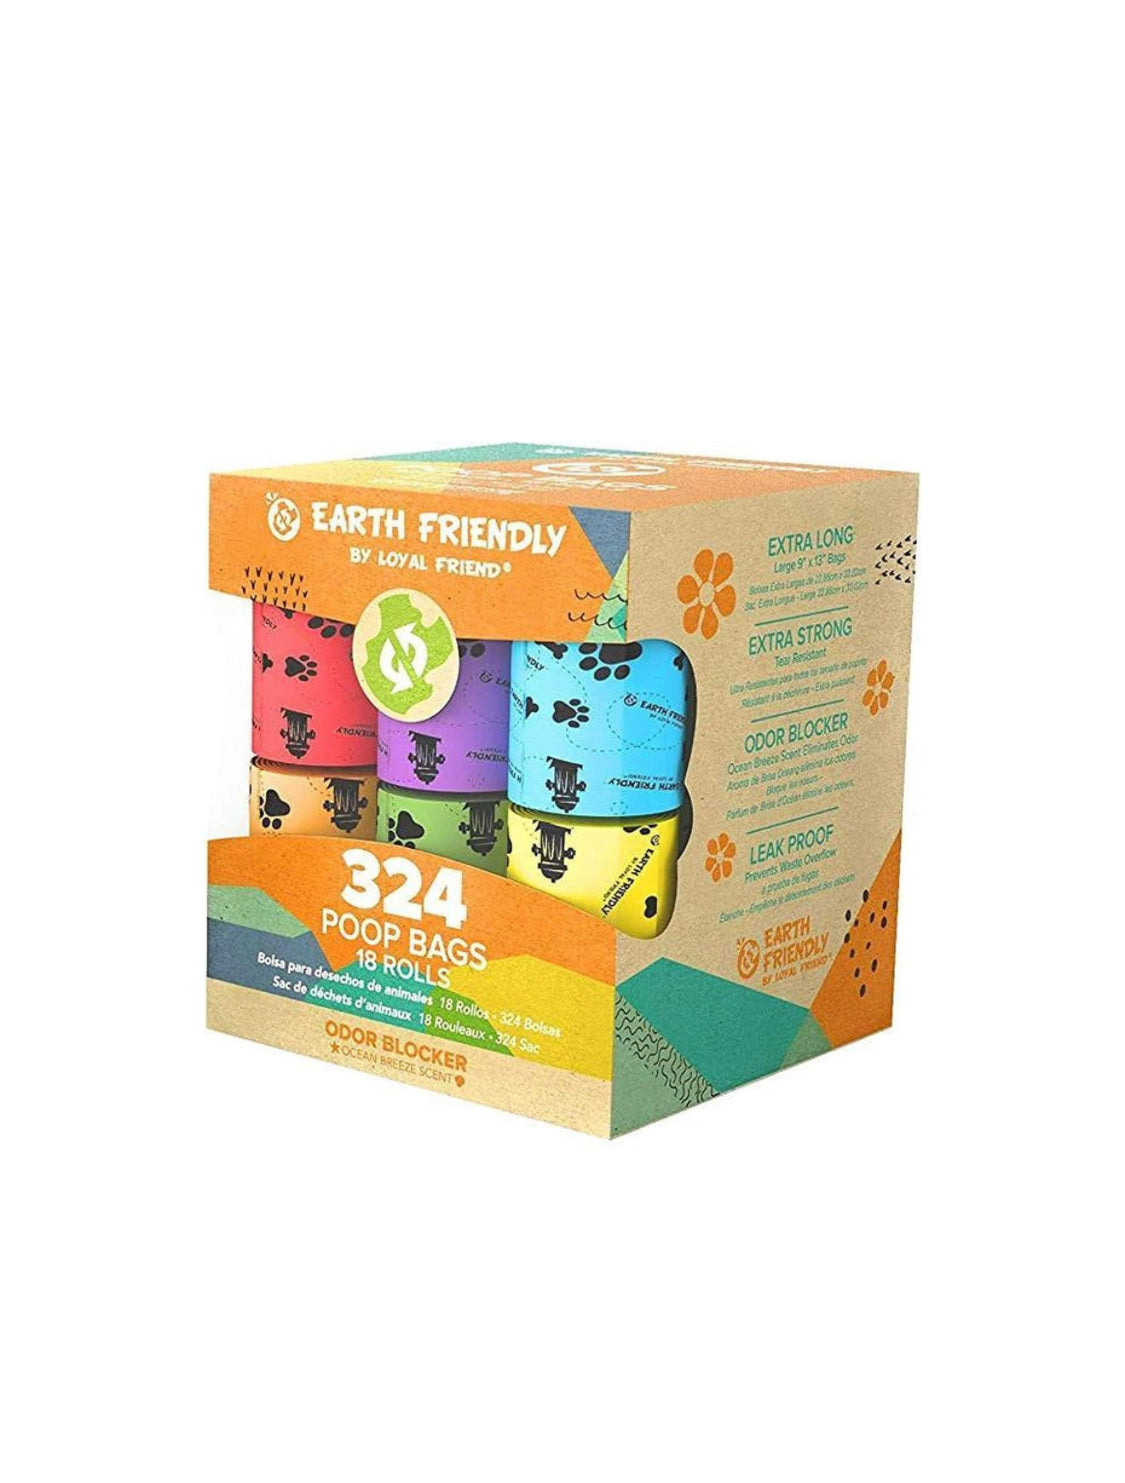 324 Sacchetti igienici per il cane, colorati e biodegradabili